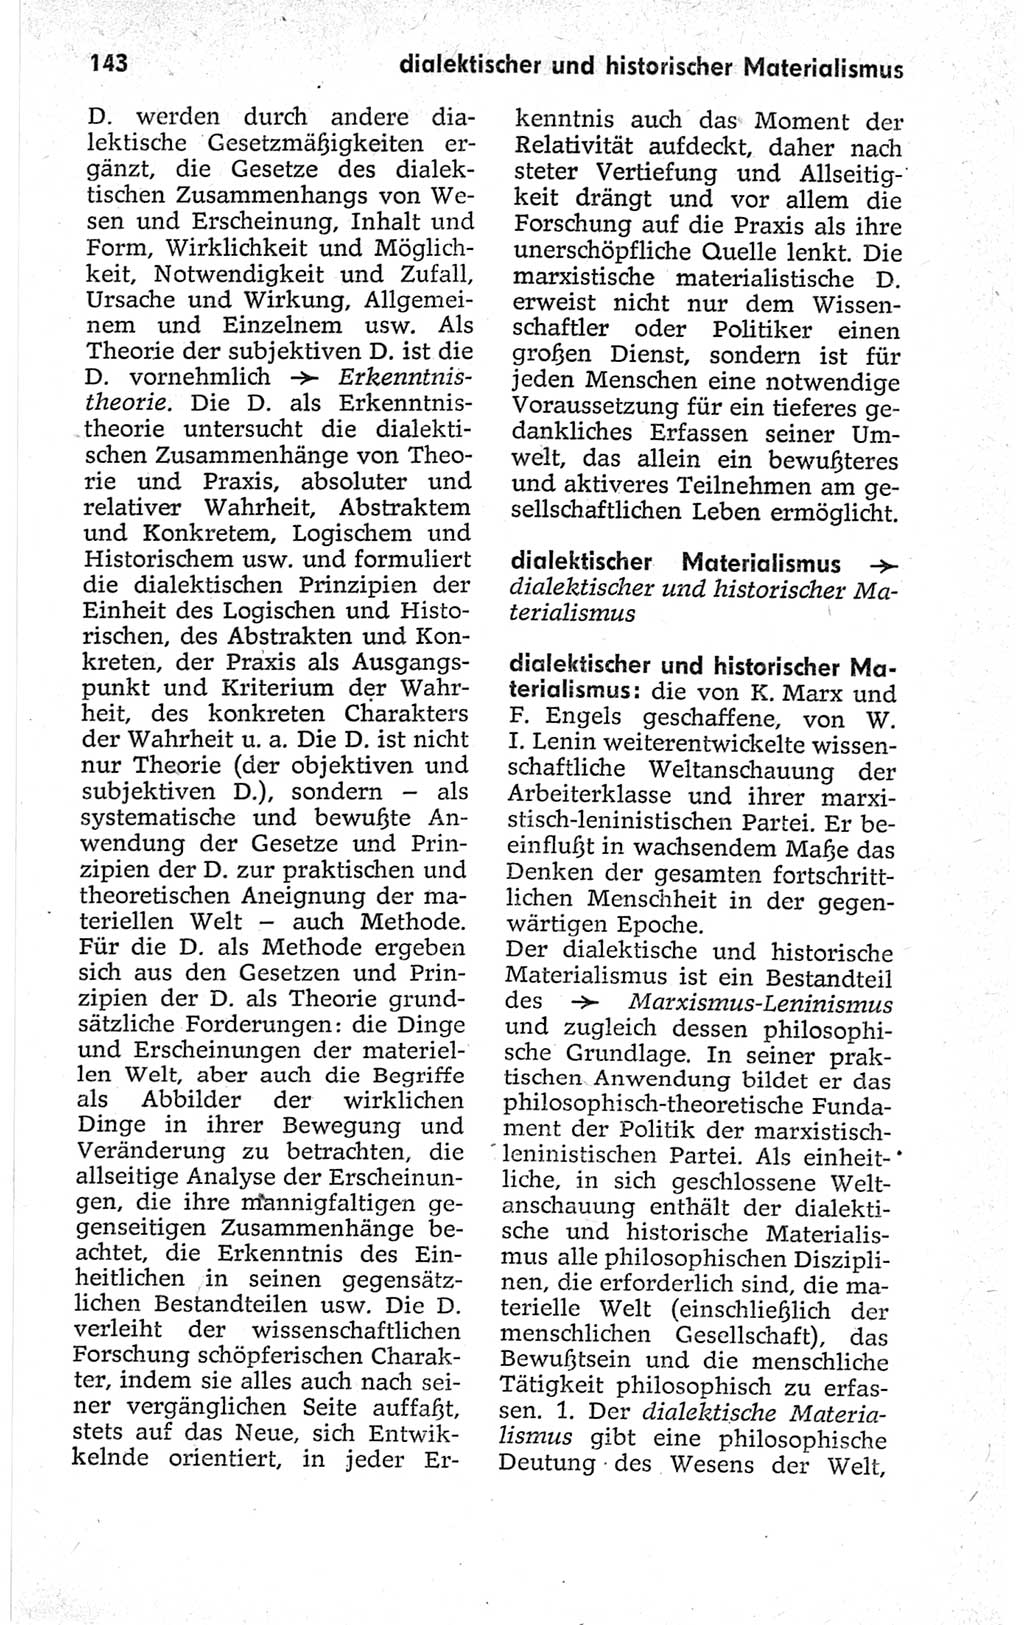 Kleines politisches Wörterbuch [Deutsche Demokratische Republik (DDR)] 1967, Seite 143 (Kl. pol. Wb. DDR 1967, S. 143)